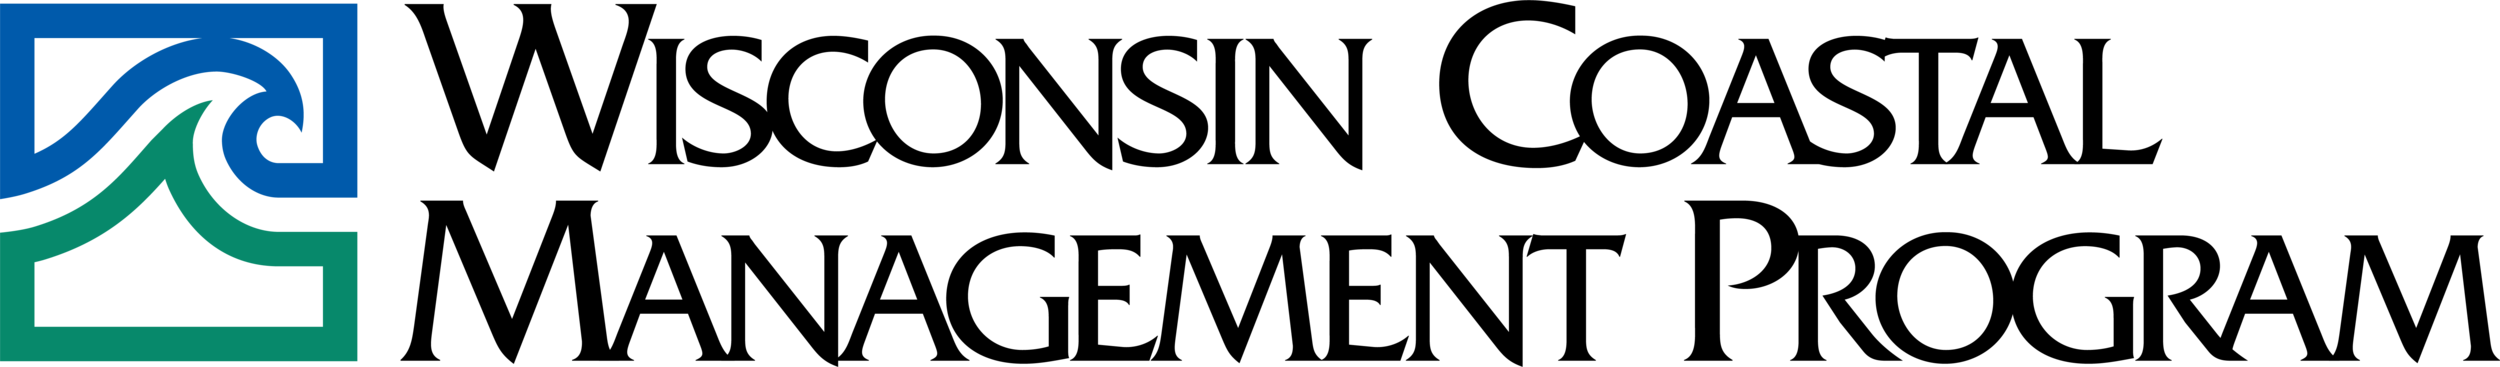 WCMP-Logo-RGB-7888x1157.png